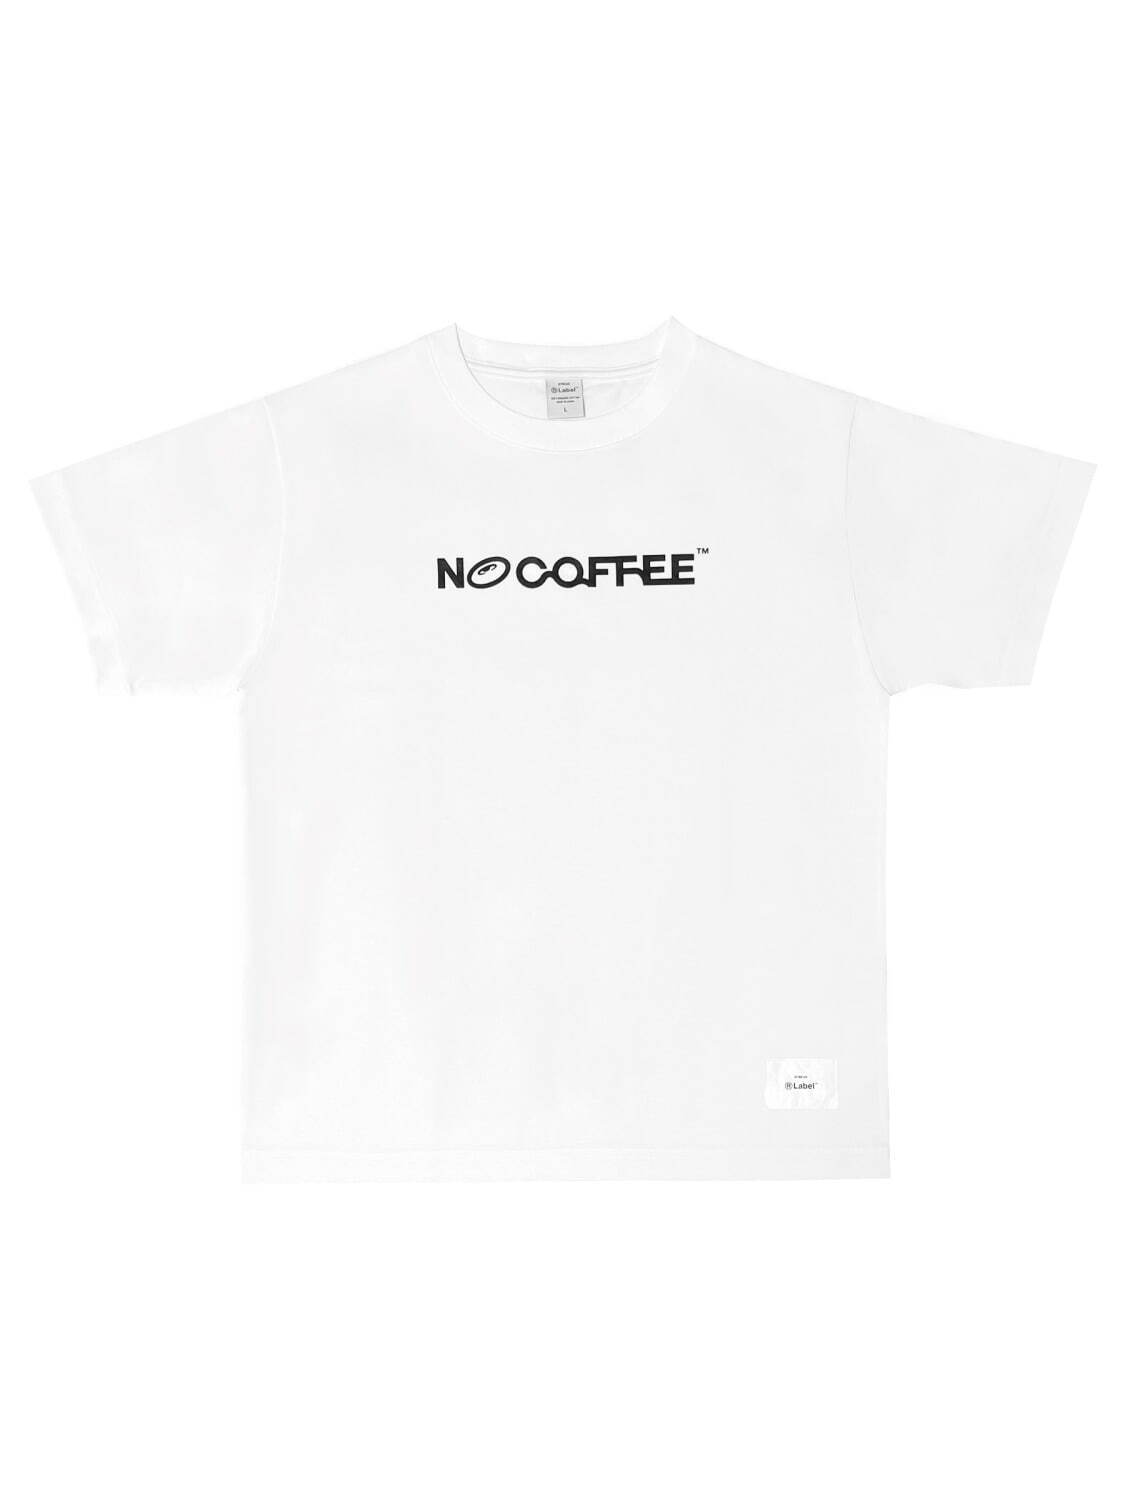 ノーコーヒー×アールレーベル×コインパーキングデリバリーの限定ロゴ入りTシャツ、恵比寿で先行発売｜写真5